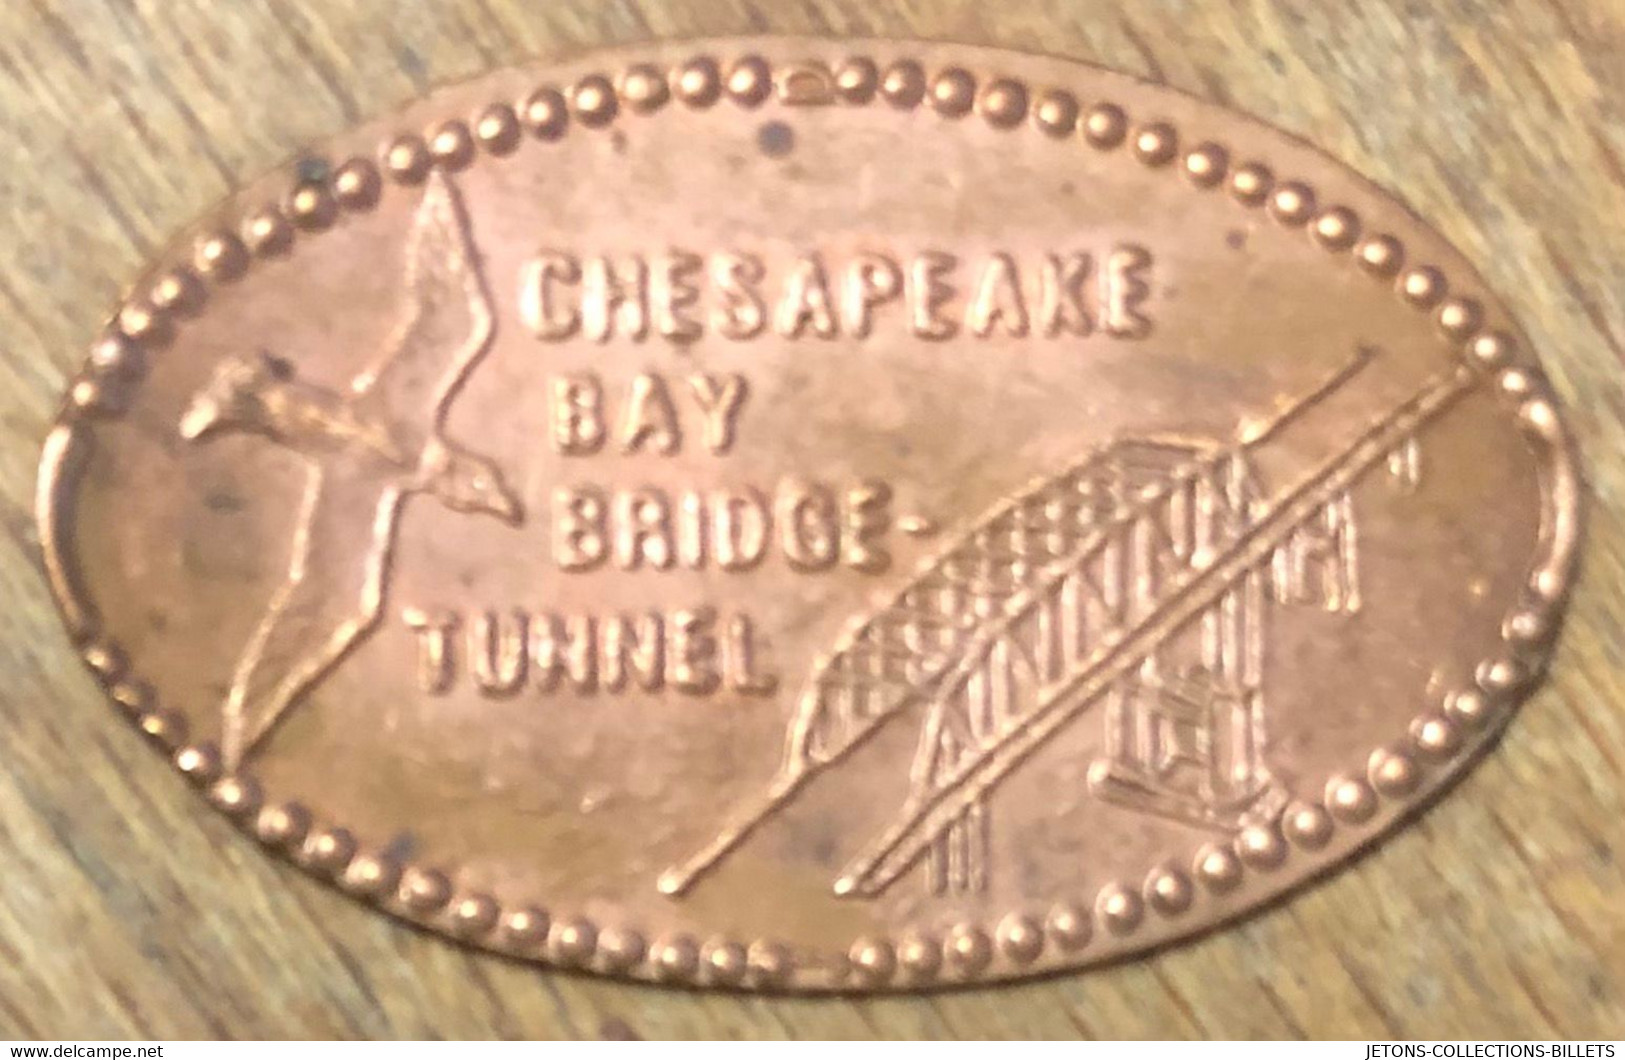 ÉTATS-UNIS USA CHESAPEAKE BAY  BRIDGE-TUNNEL PIÈCE ÉCRASÉE PENNY ELONGATED COIN MEDAILLE TOURISTIQUE MEDALS TOKENS - Souvenirmunten (elongated Coins)